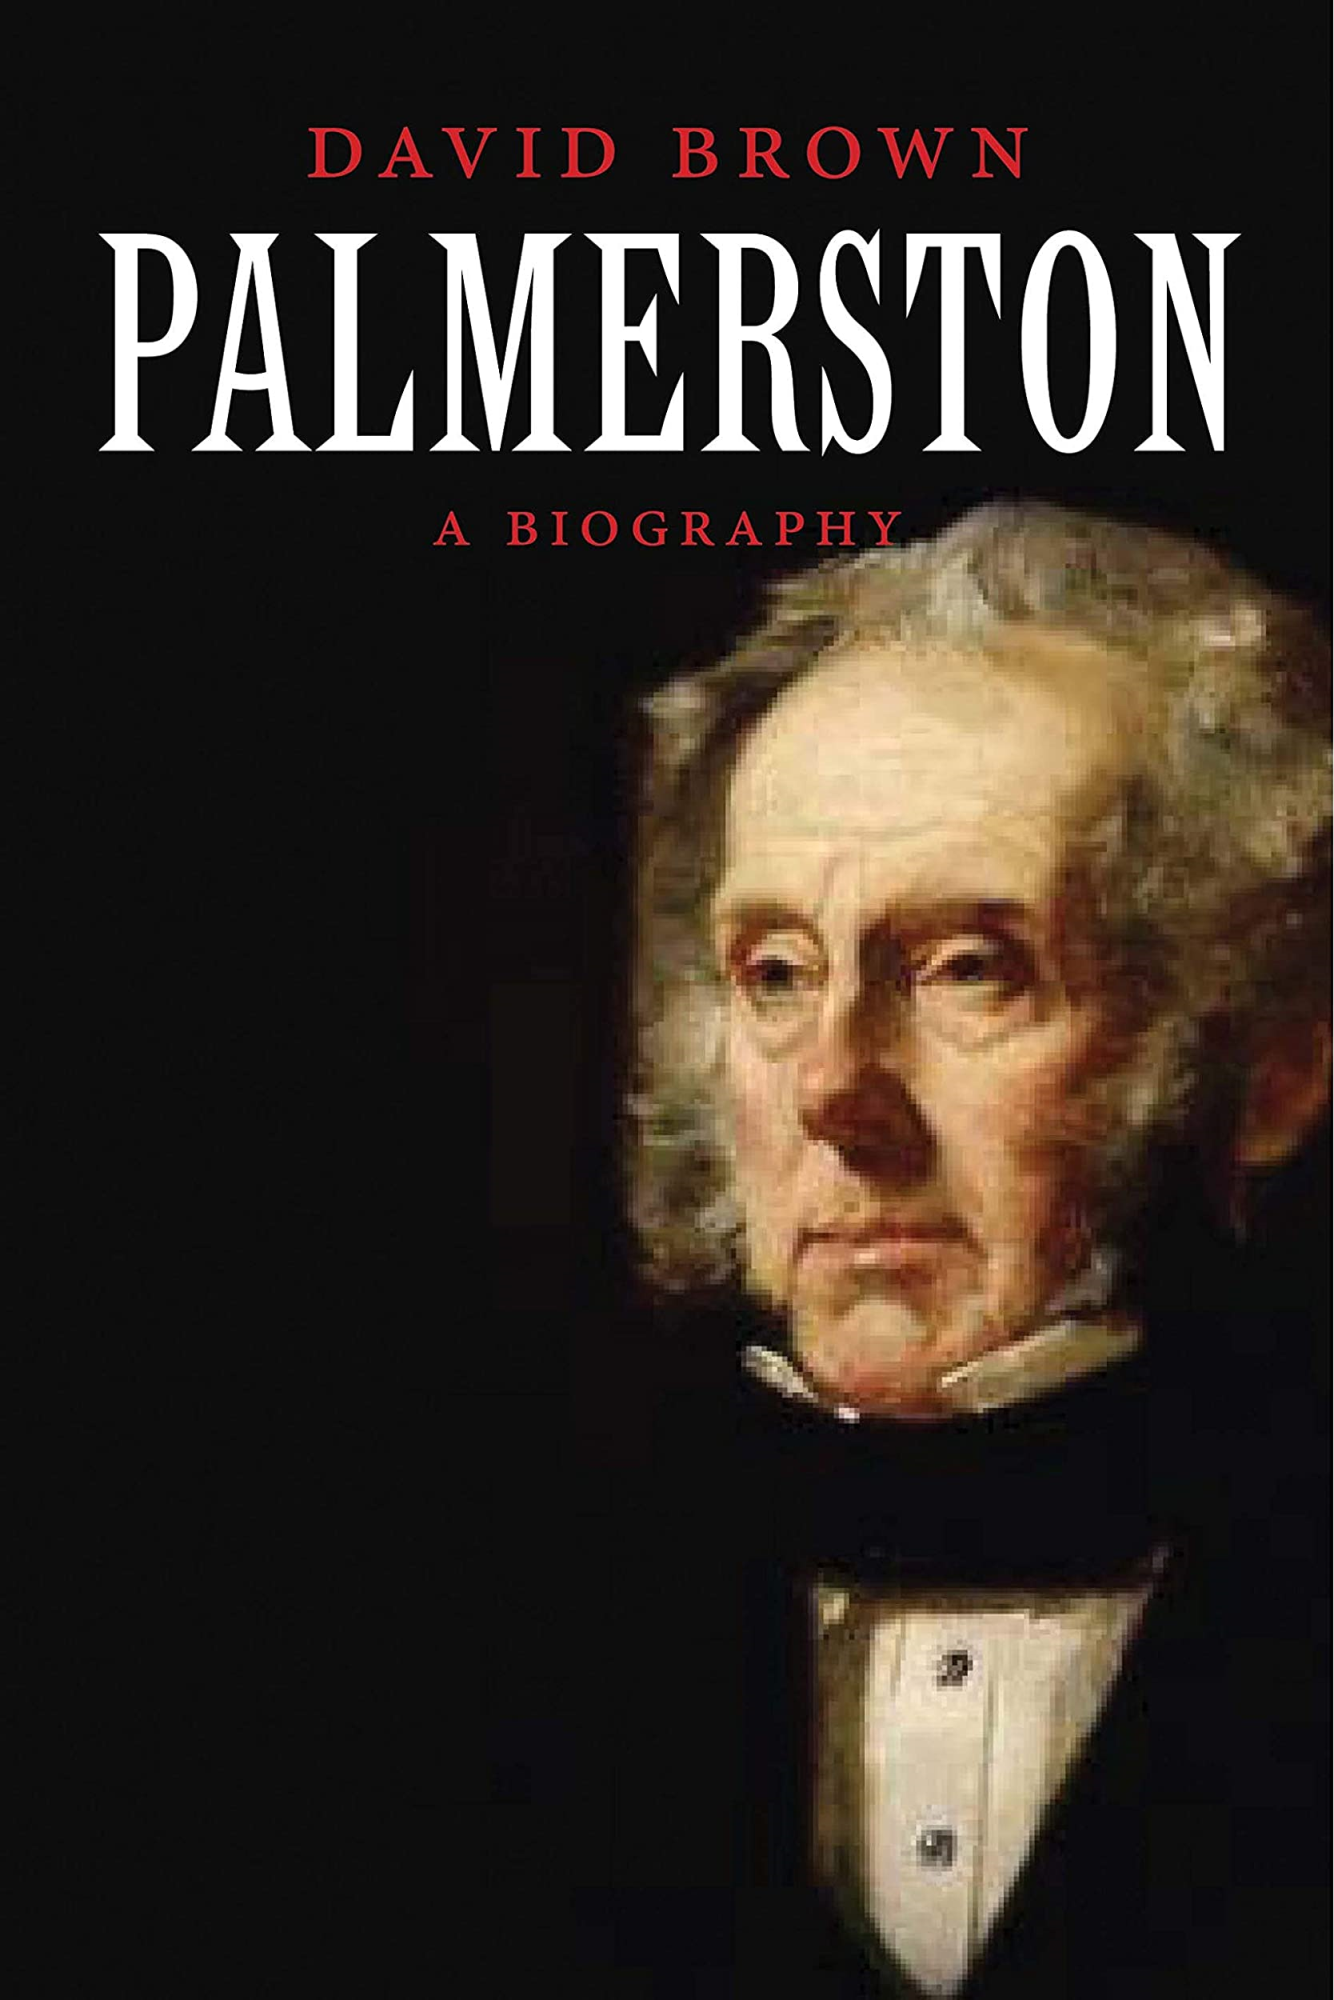 LIbri UK/US Brown, David - Palmerston : A Biography NUOVO SIGILLATO, EDIZIONE DEL 03/01/2012 SUBITO DISPONIBILE